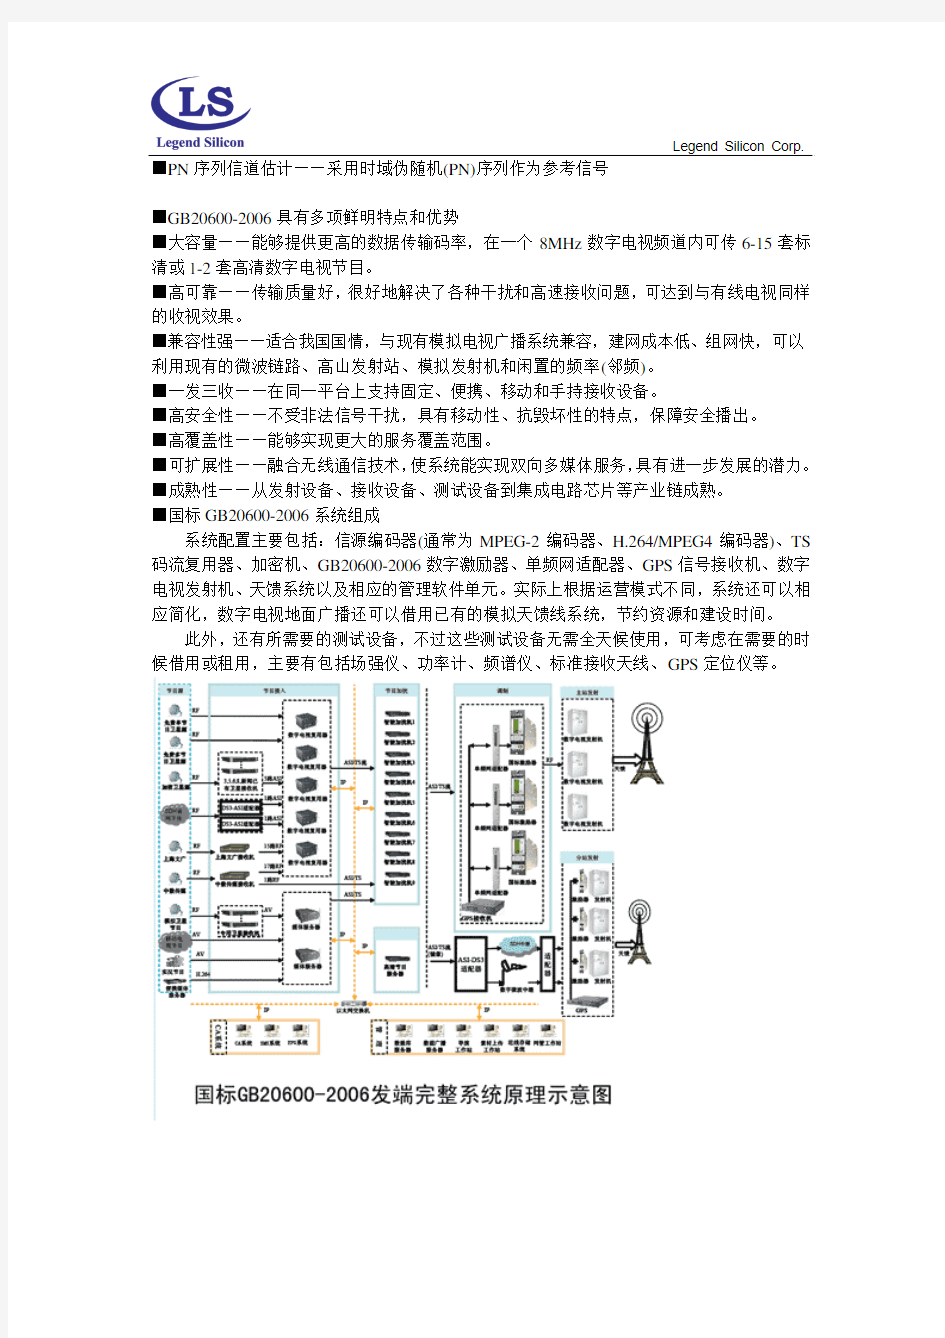 中国数字电视地面广播标准系统介绍